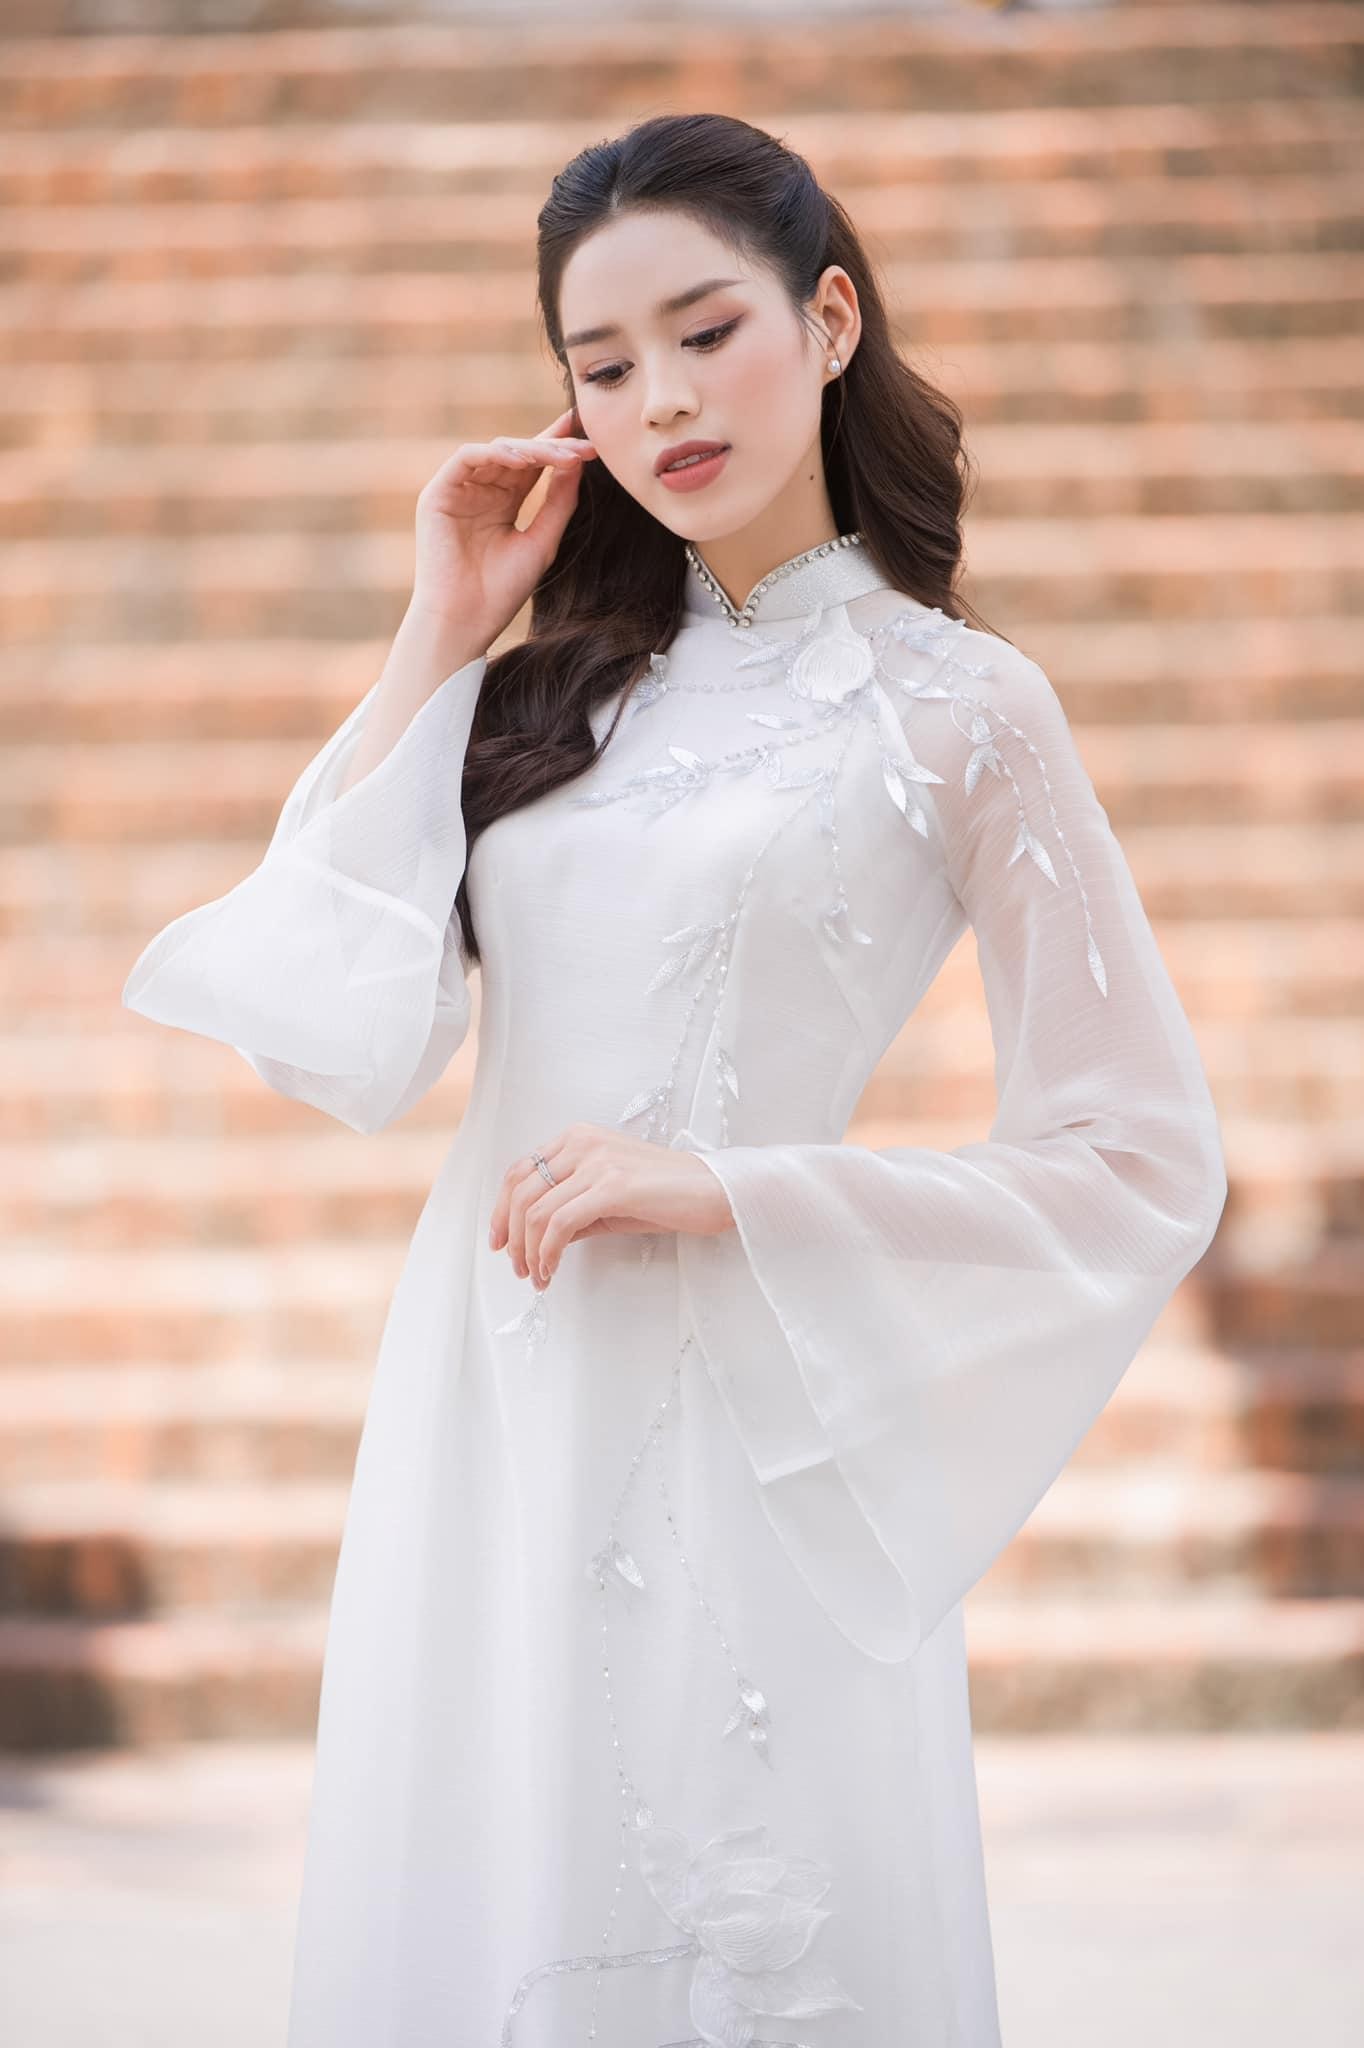 Hoa hậu Đỗ Thị Hà đẹp thuần khiết với áo dài trắng-1